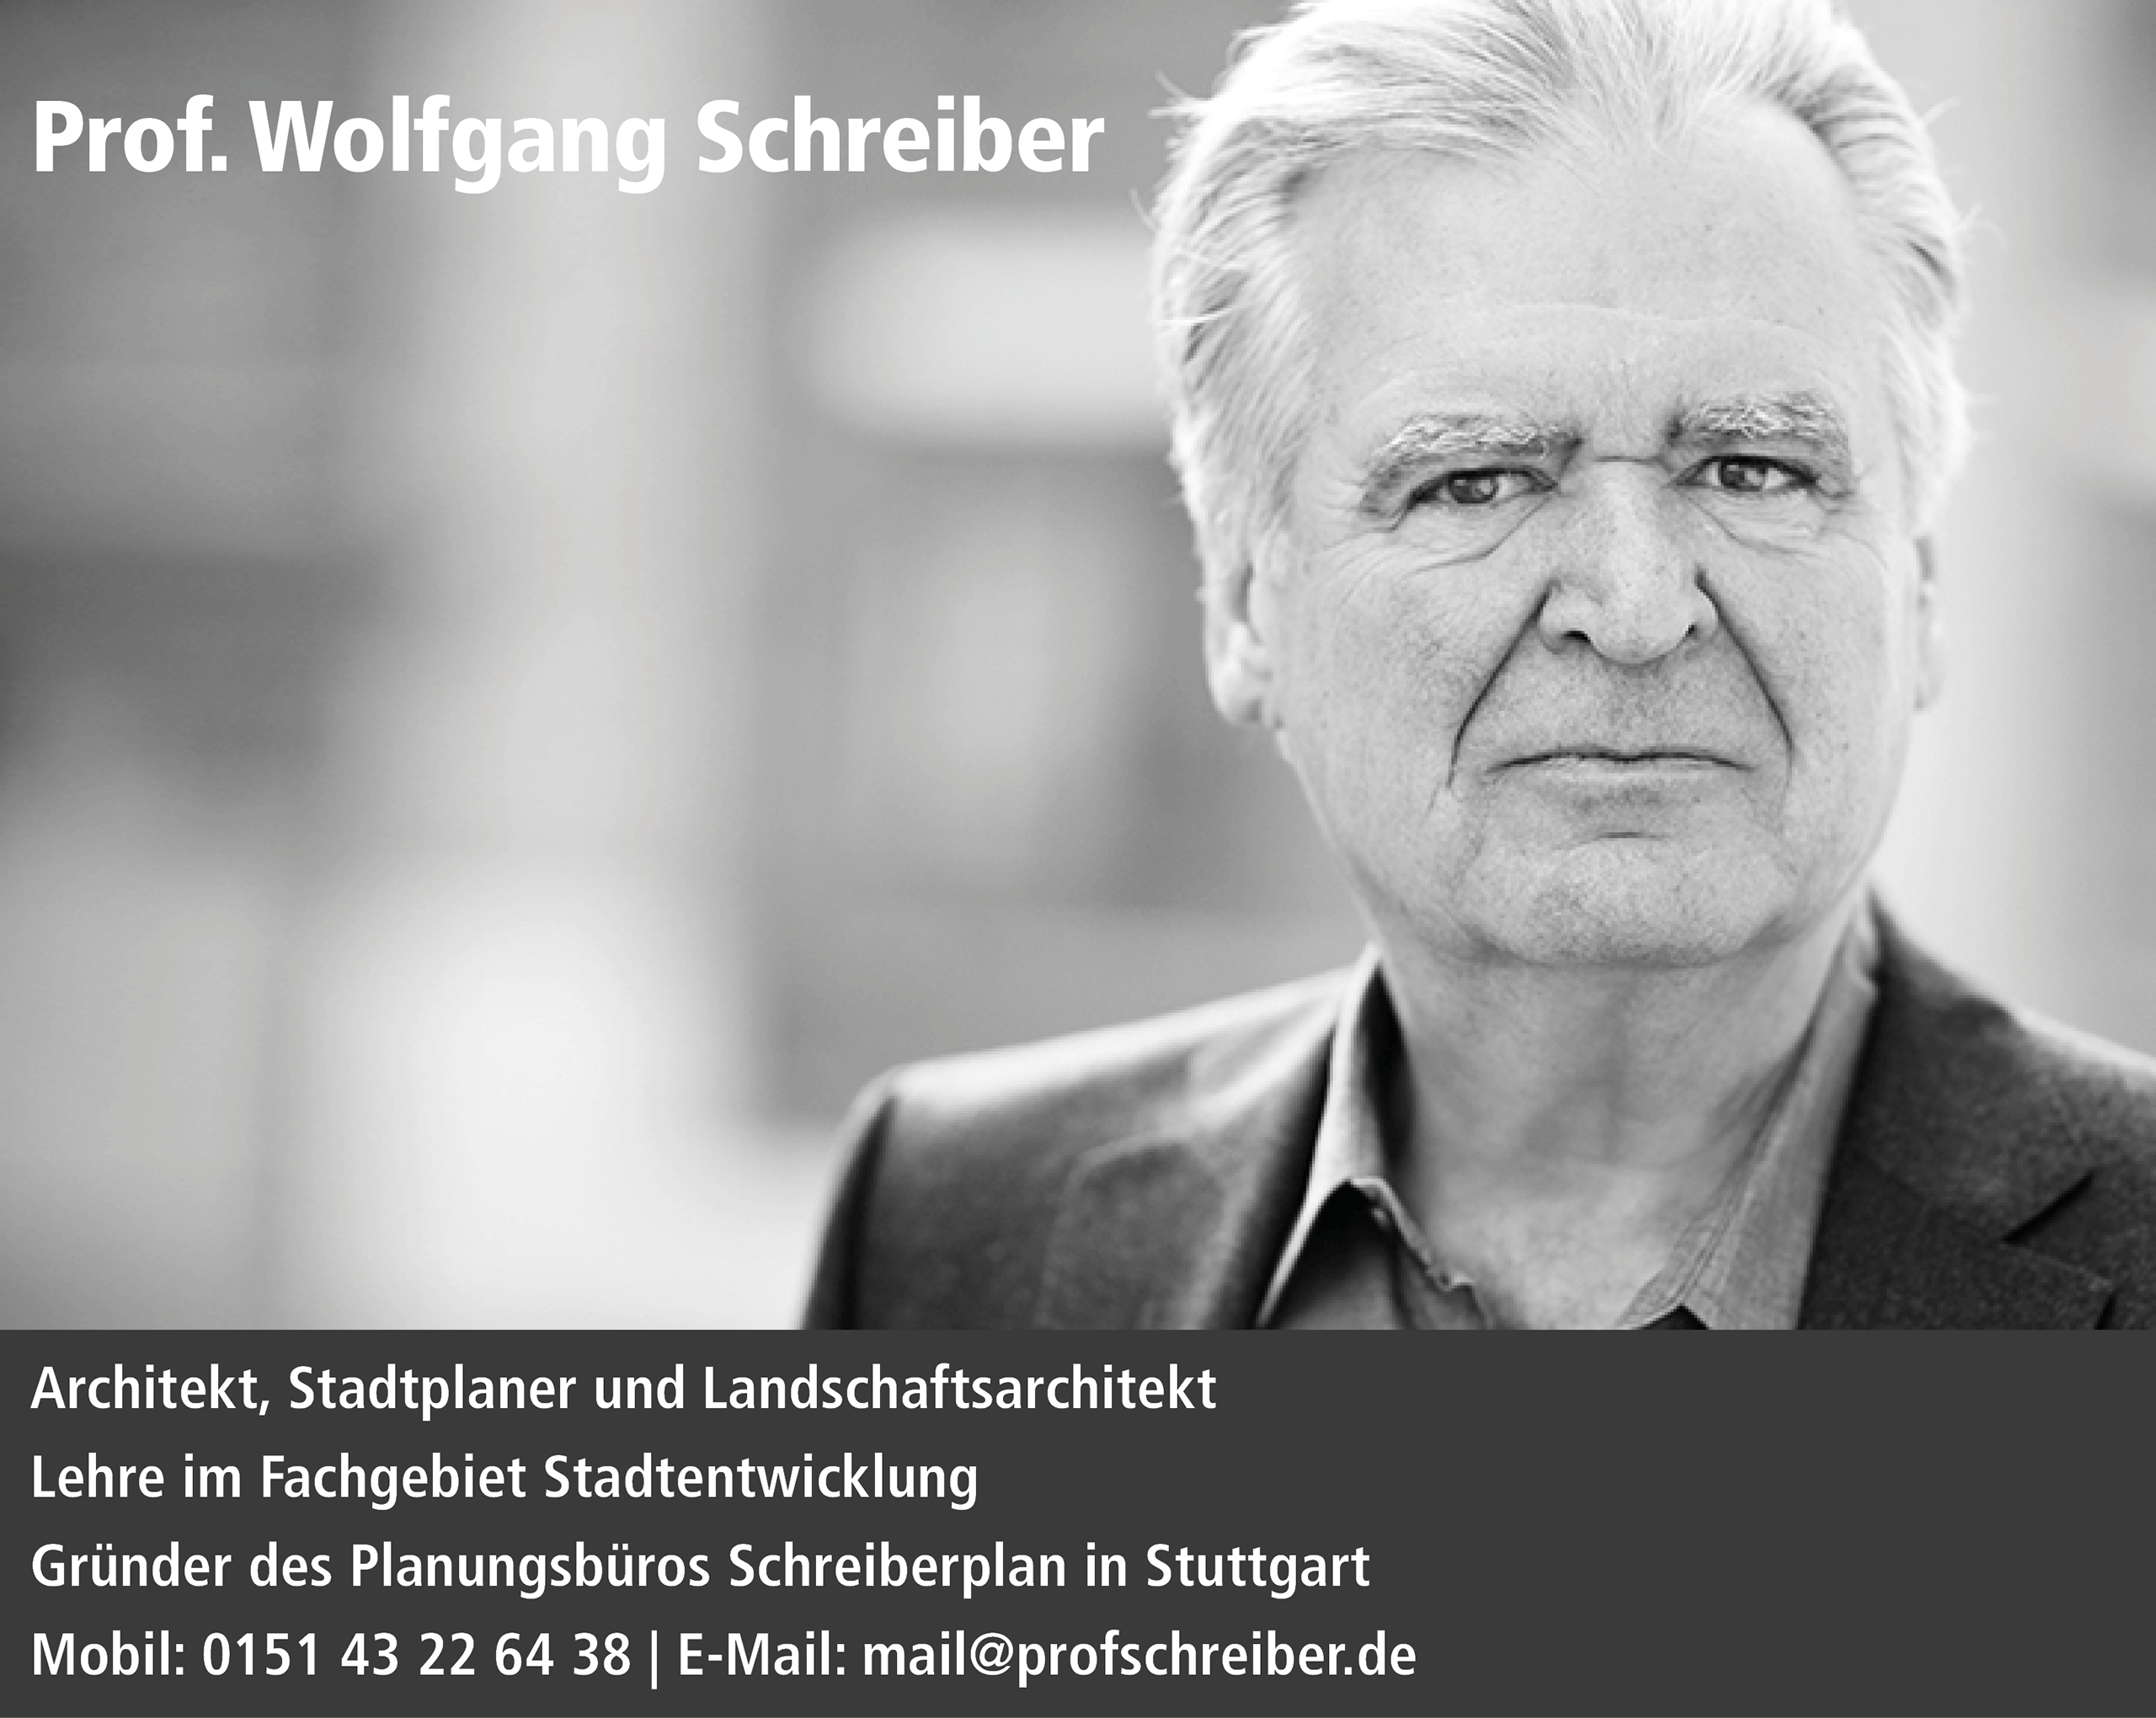 Prof. Wolfgang Schreiber